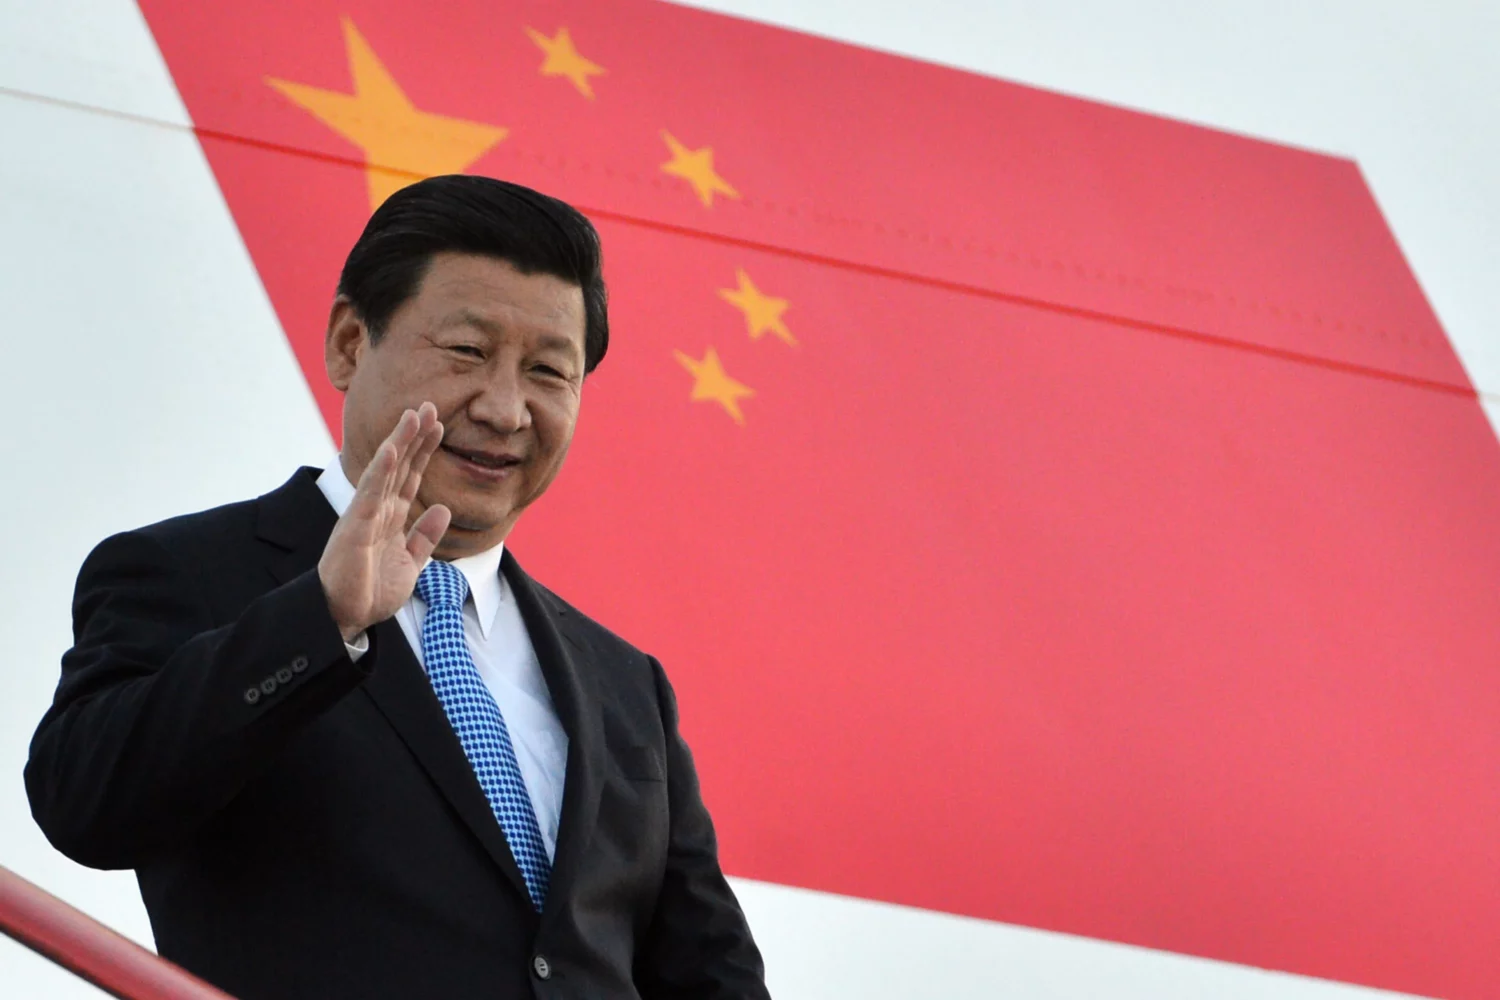 Κίνα: Στο πρωτοχρονιάτικο διάγγελμά του ο πρόεδρος Σι καλεί τους πολίτες να στρέψουν το βλέμμα στο μέλλον